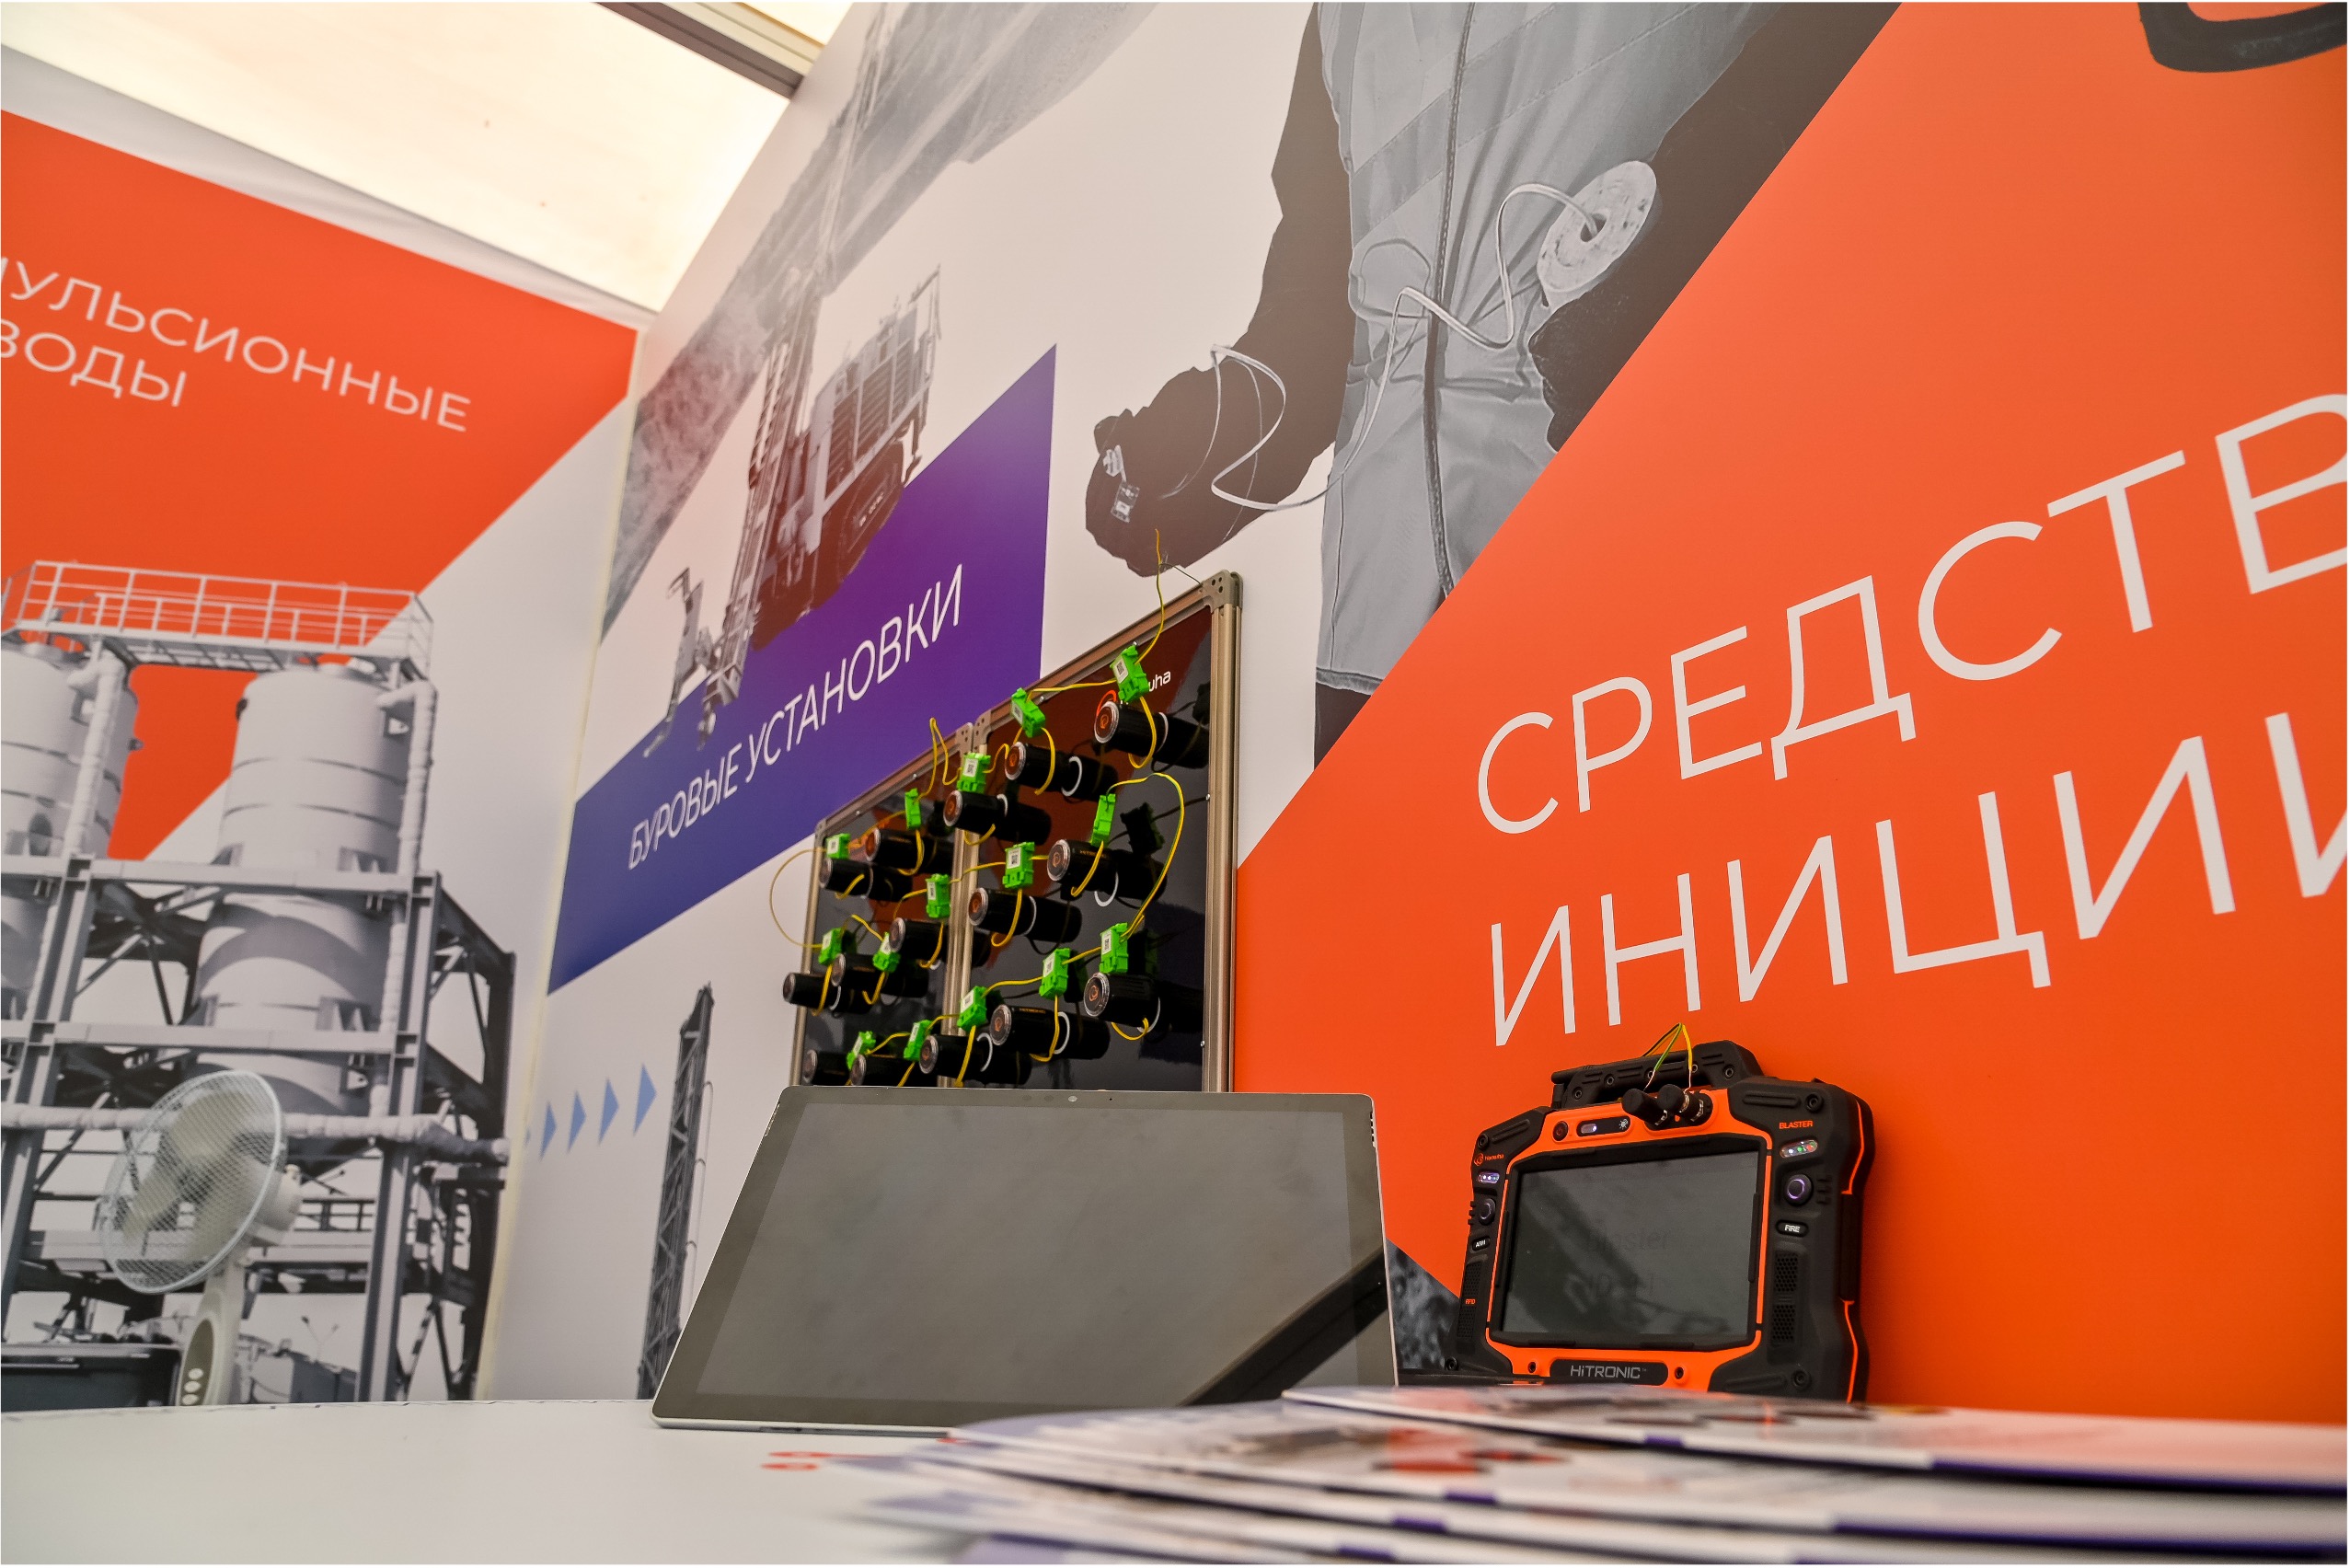 Выставка "Уголь России и майнинг 2023" - традиционно о новом